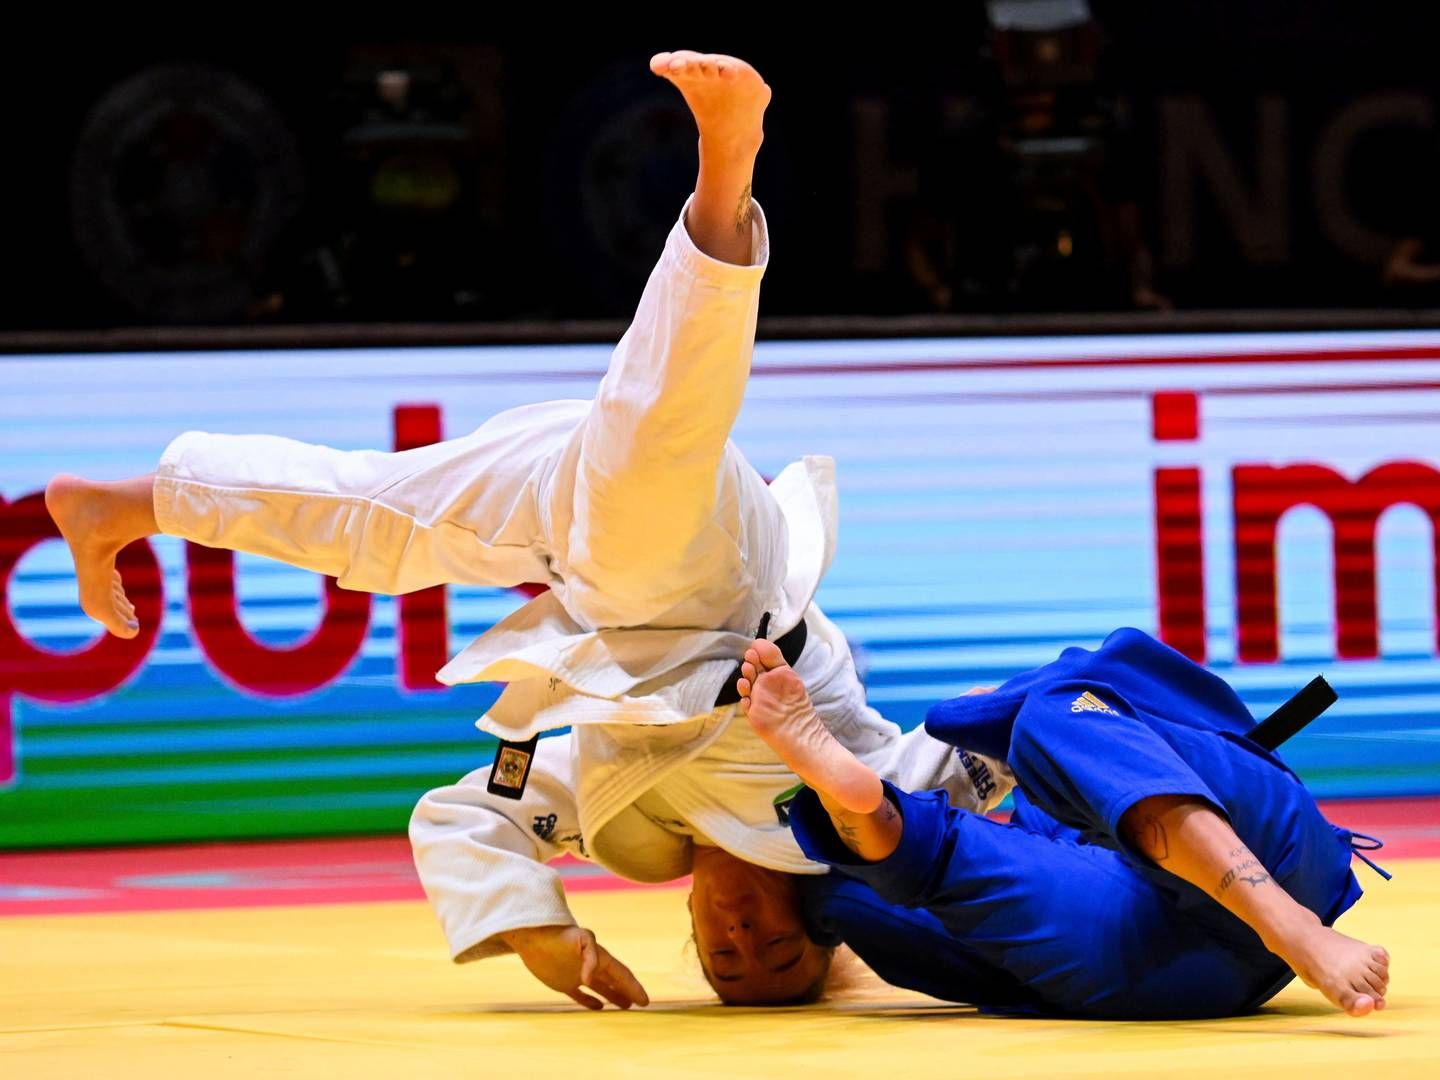 REDDET: Den Brasiliansk jiu-jitsu turneringen kunne gå som planlagt etter gaven fra Sparebanken Øst | Foto: Tibor Illyes/NTB